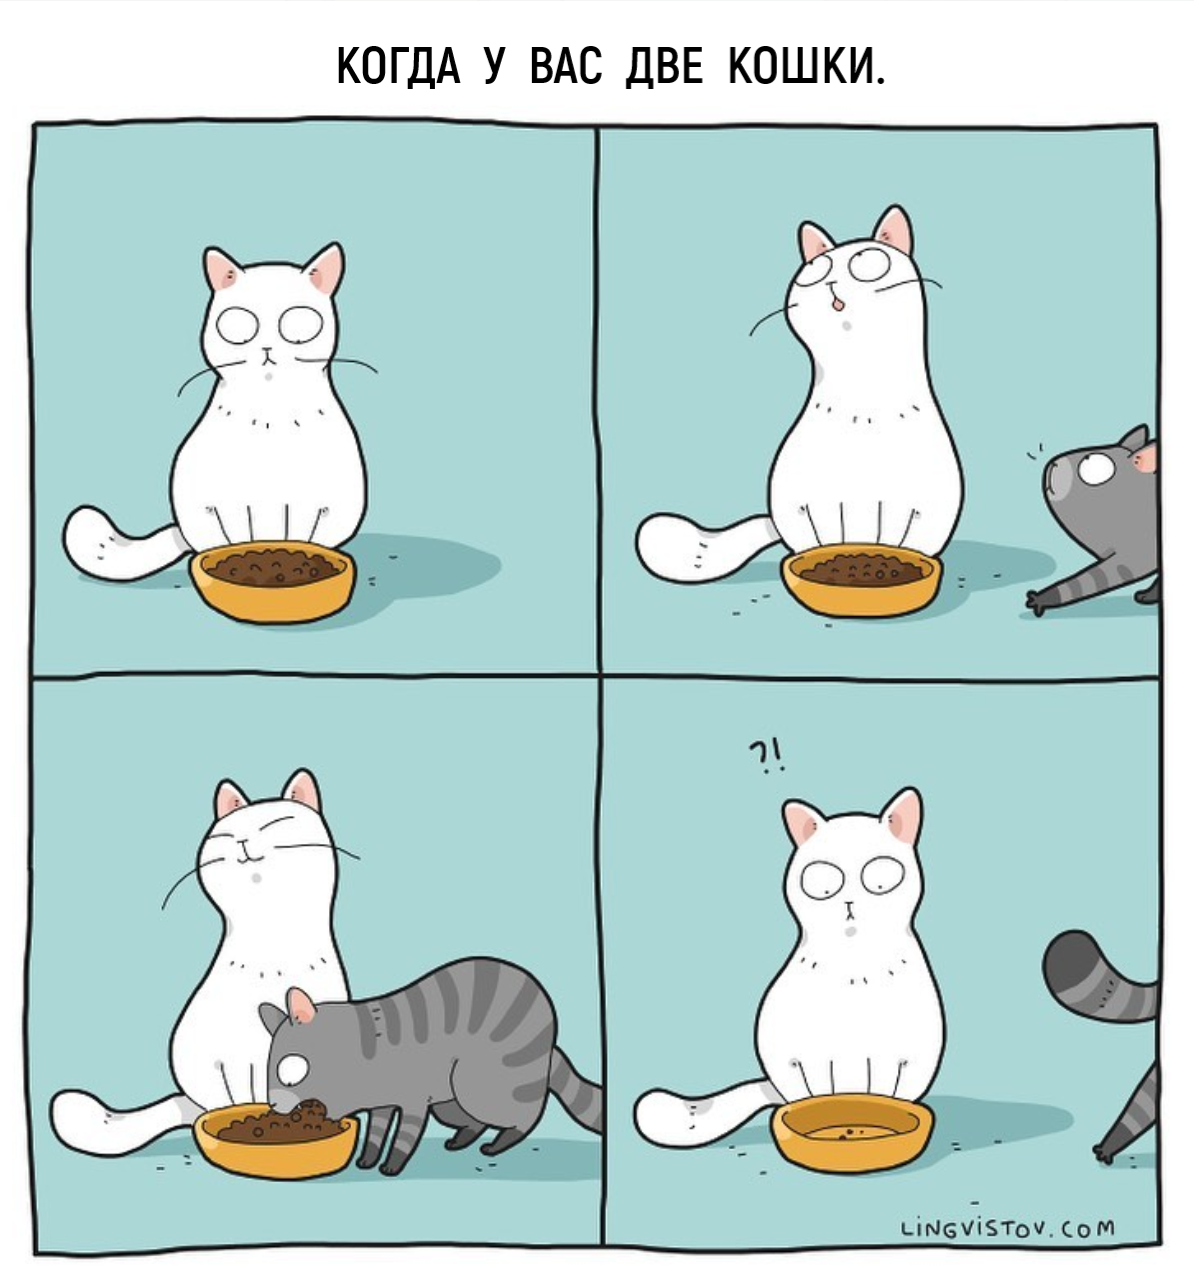 Русский комикс про котов. Комикс про кота. Комиксы про котят. Lingvistov комиксы. Котики бывают двух видов.